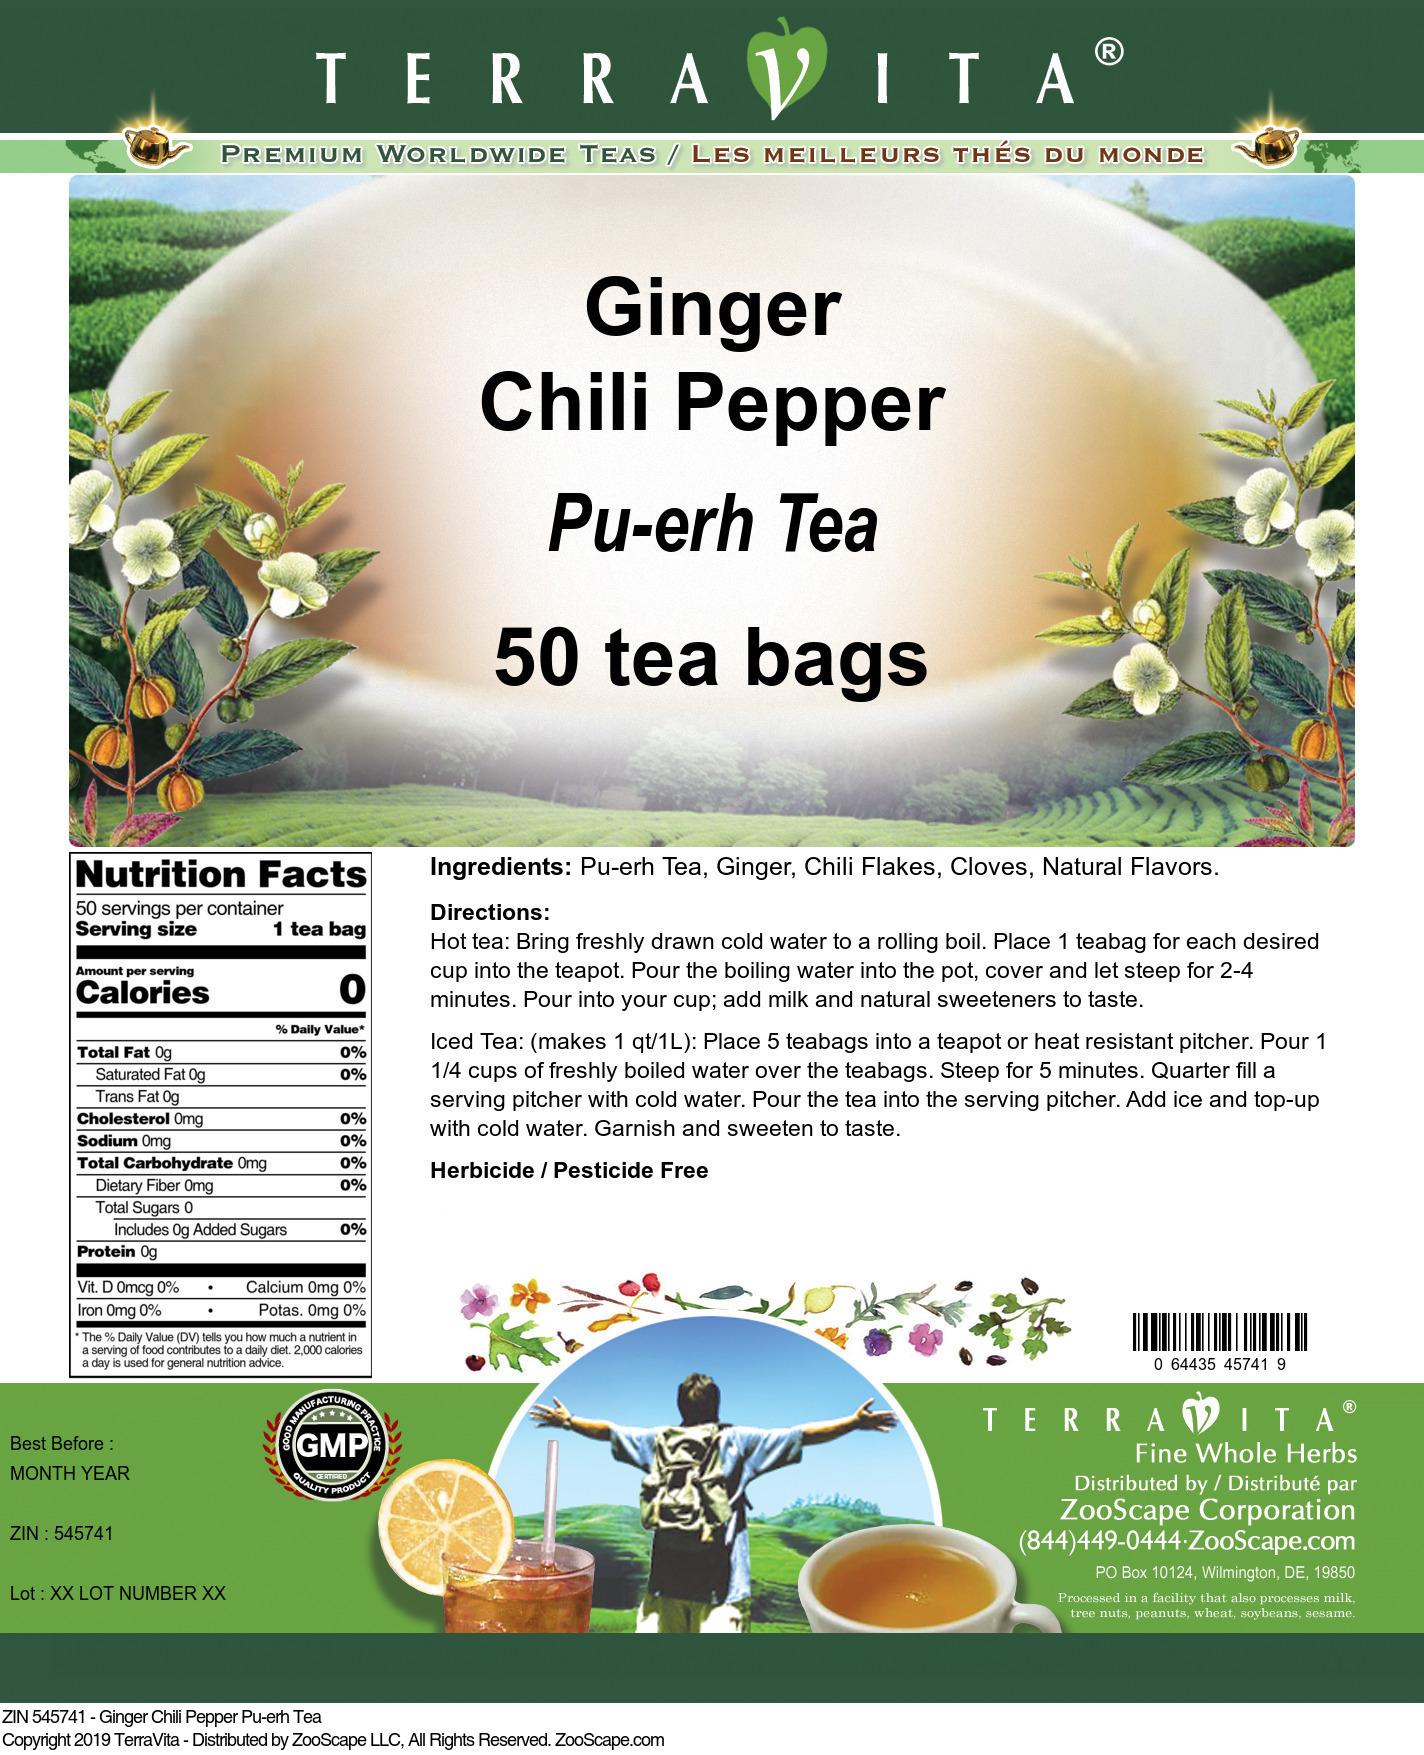 Ginger Chili Pepper Pu-erh Tea - Label